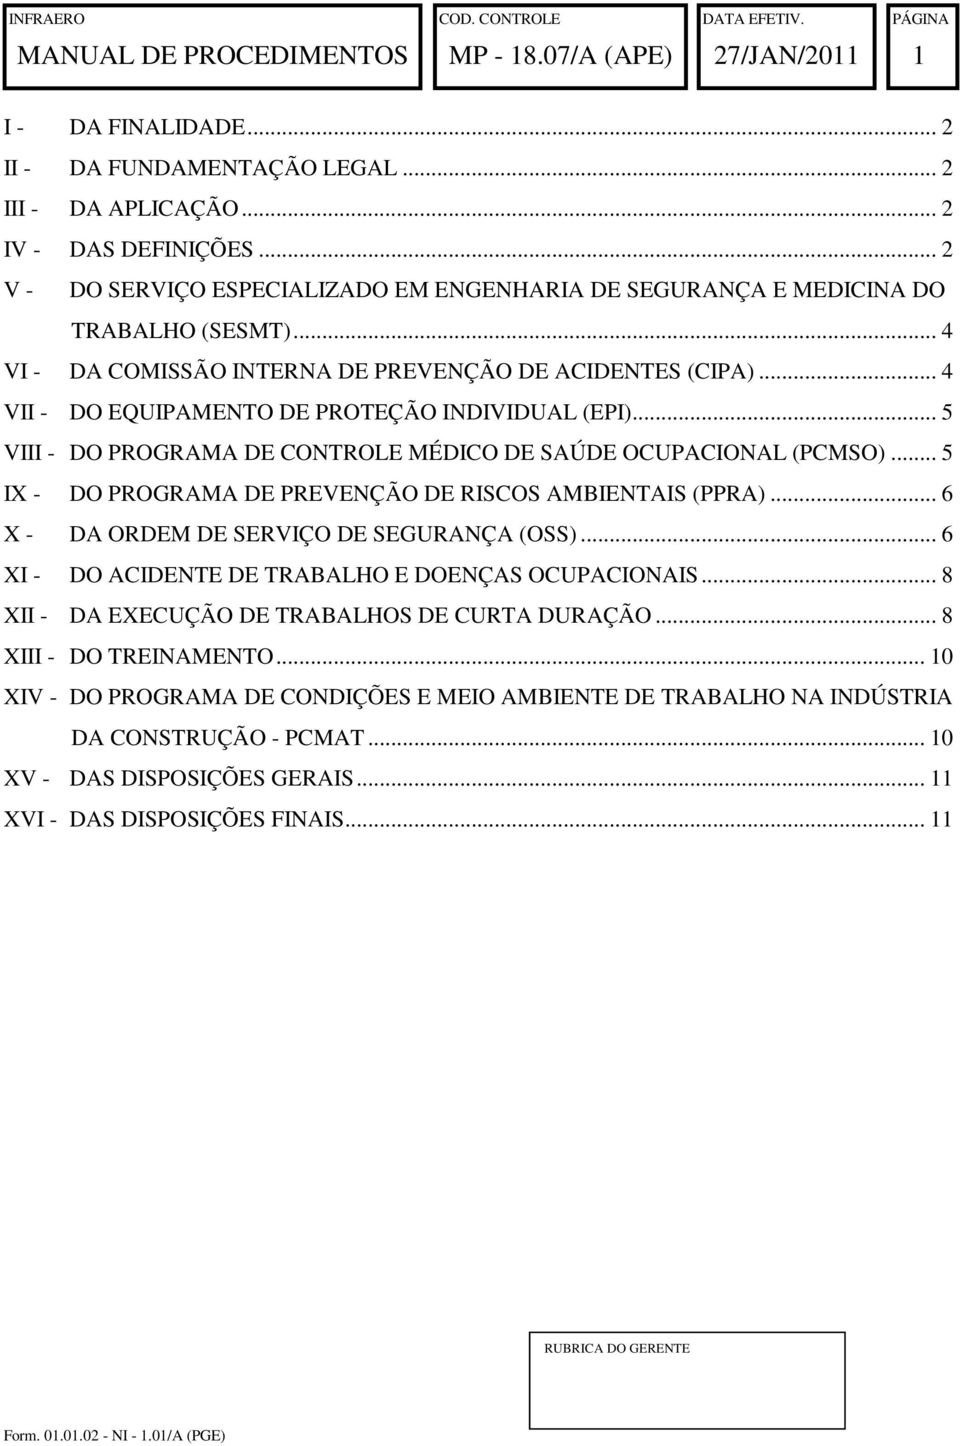 .. 5 IX - DO PROGRAMA DE PREVENÇÃO DE RISCOS AMBIENTAIS (PPRA)... 6 X - DA ORDEM DE SERVIÇO DE SEGURANÇA (OSS)... 6 XI - DO ACIDENTE DE TRABALHO E DOENÇAS OCUPACIONAIS.